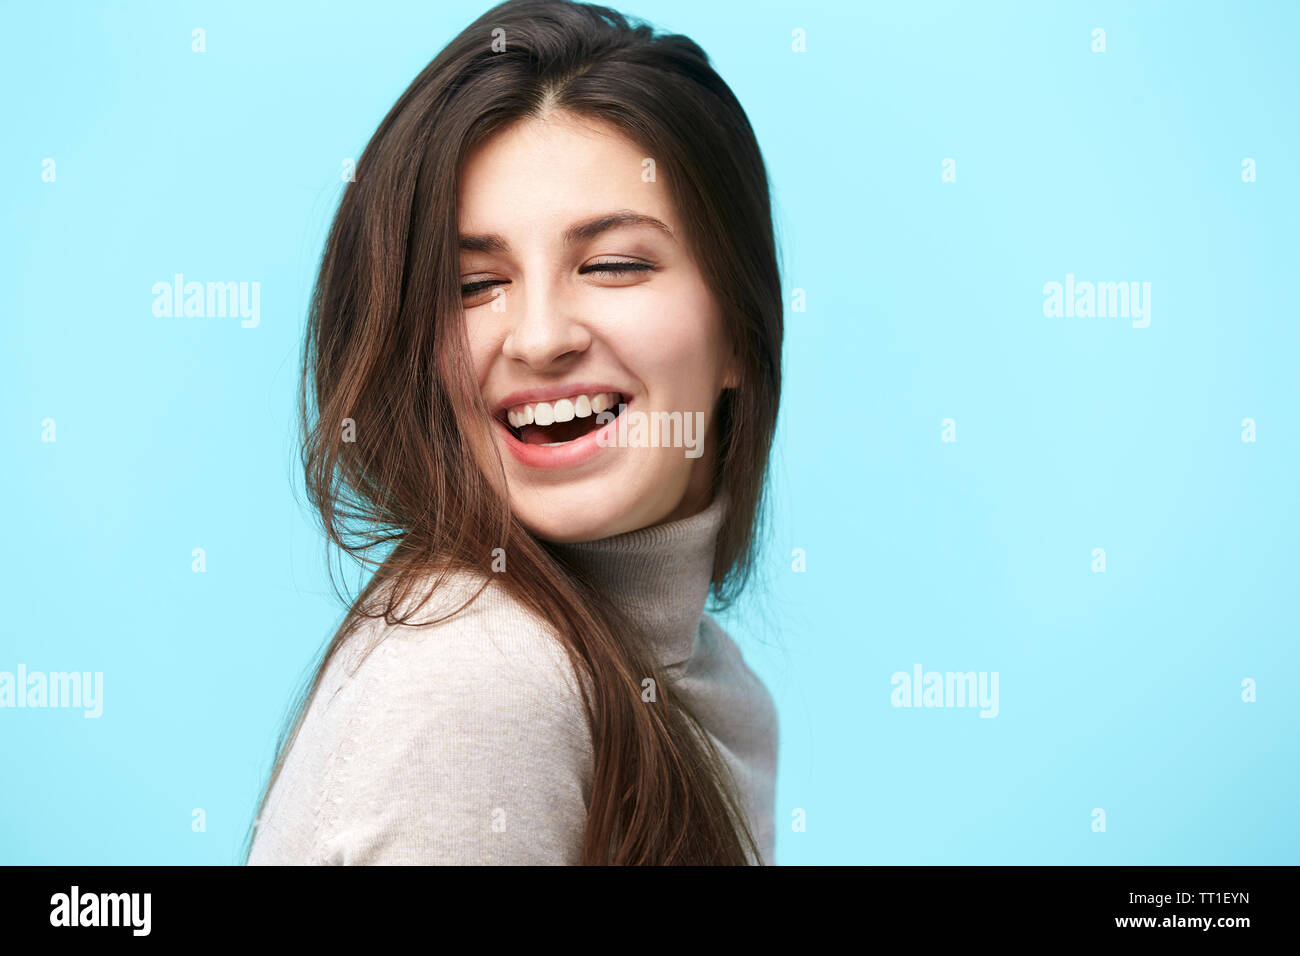 Portrait einer jungen kaukasischen Frau mit langem Haar, glücklich und lächelnd, auf blauem Hintergrund isoliert Stockfoto